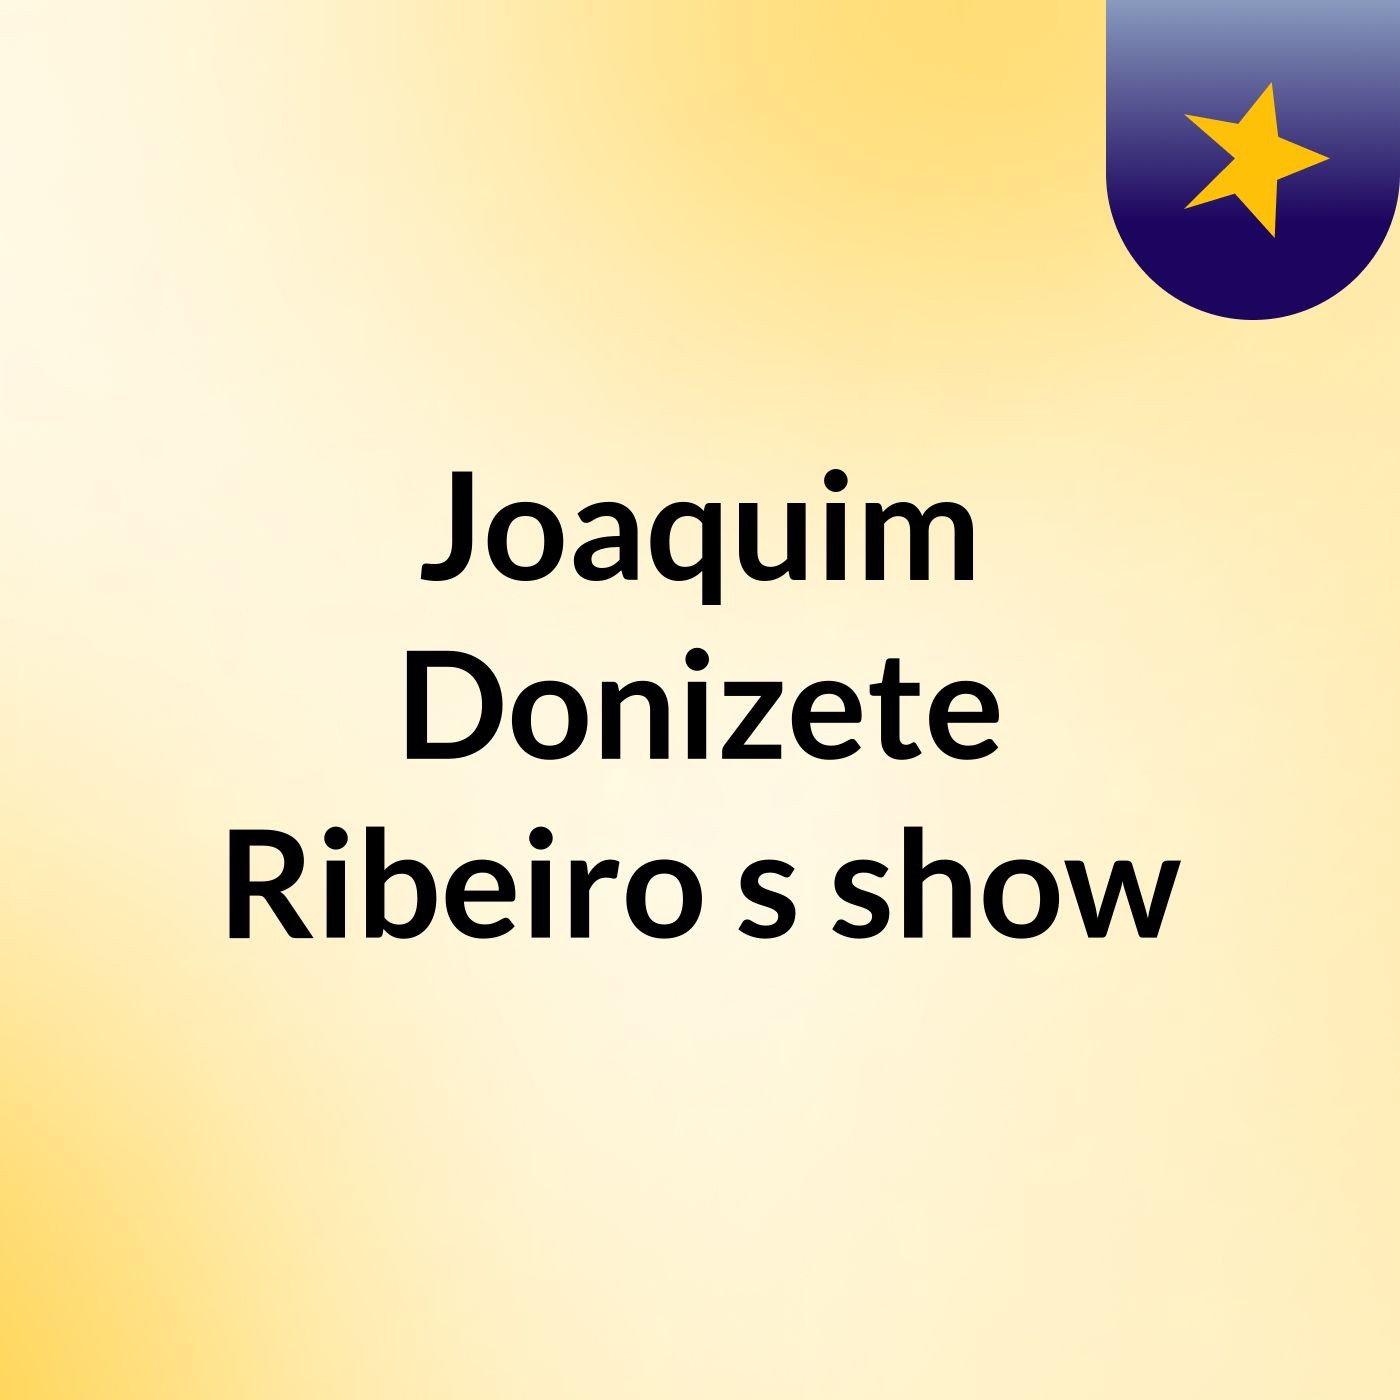 Joaquim Donizete Ribeiro's show